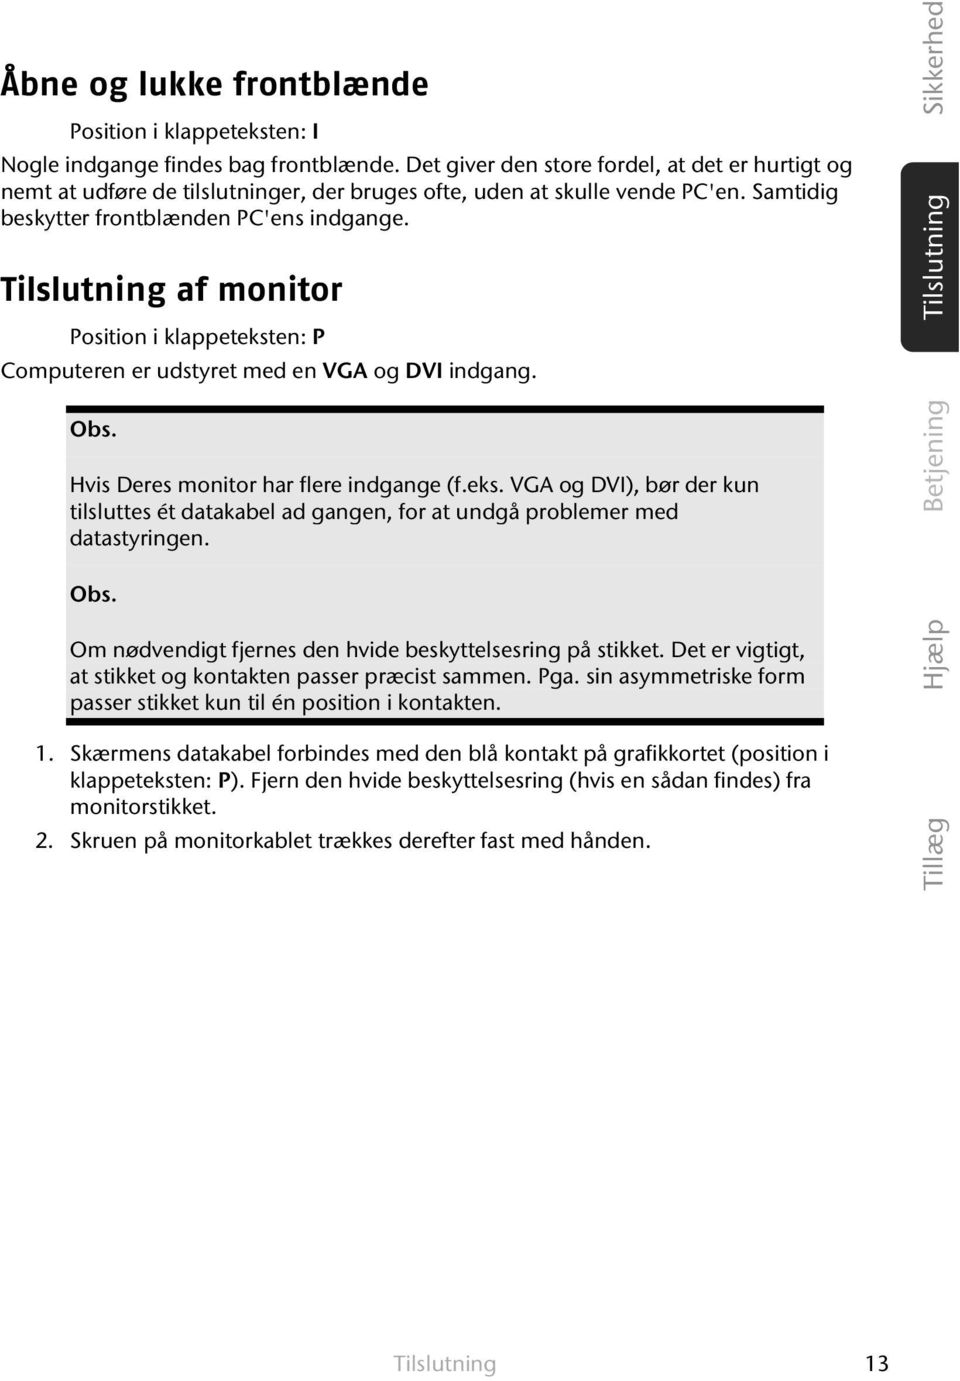 Tilslutning af monitor Position i klappeteksten: P Computeren er udstyret med en VGA og DVI indgang. Obs. Hvis Deres monitor har flere indgange (f.eks. VGA og DVI), bør der kun tilsluttes ét datakabel ad gangen, for at undgå problemer med datastyringen.